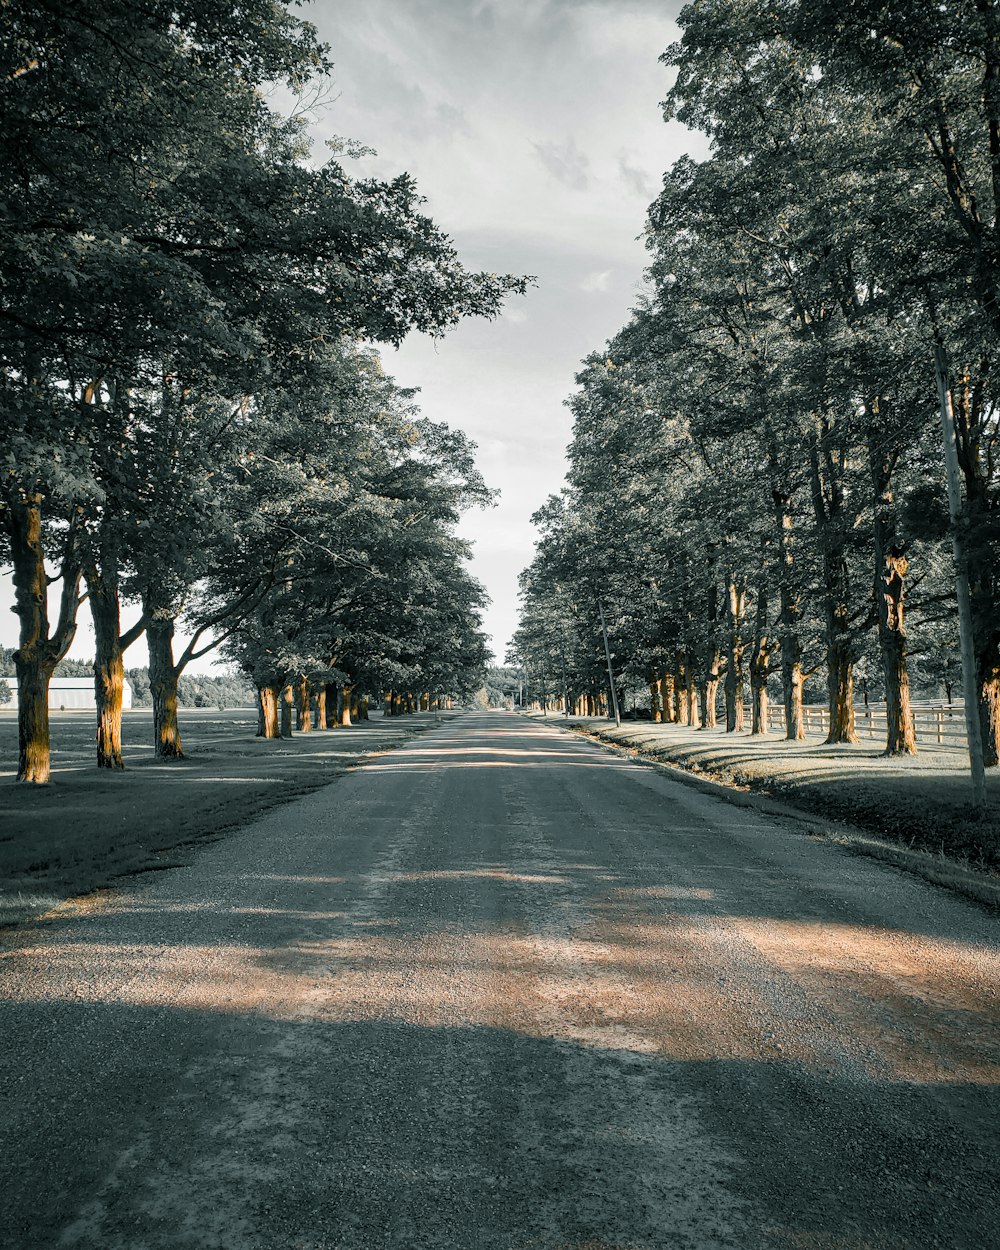 estrada de asfalto cinza entre árvores durante o dia